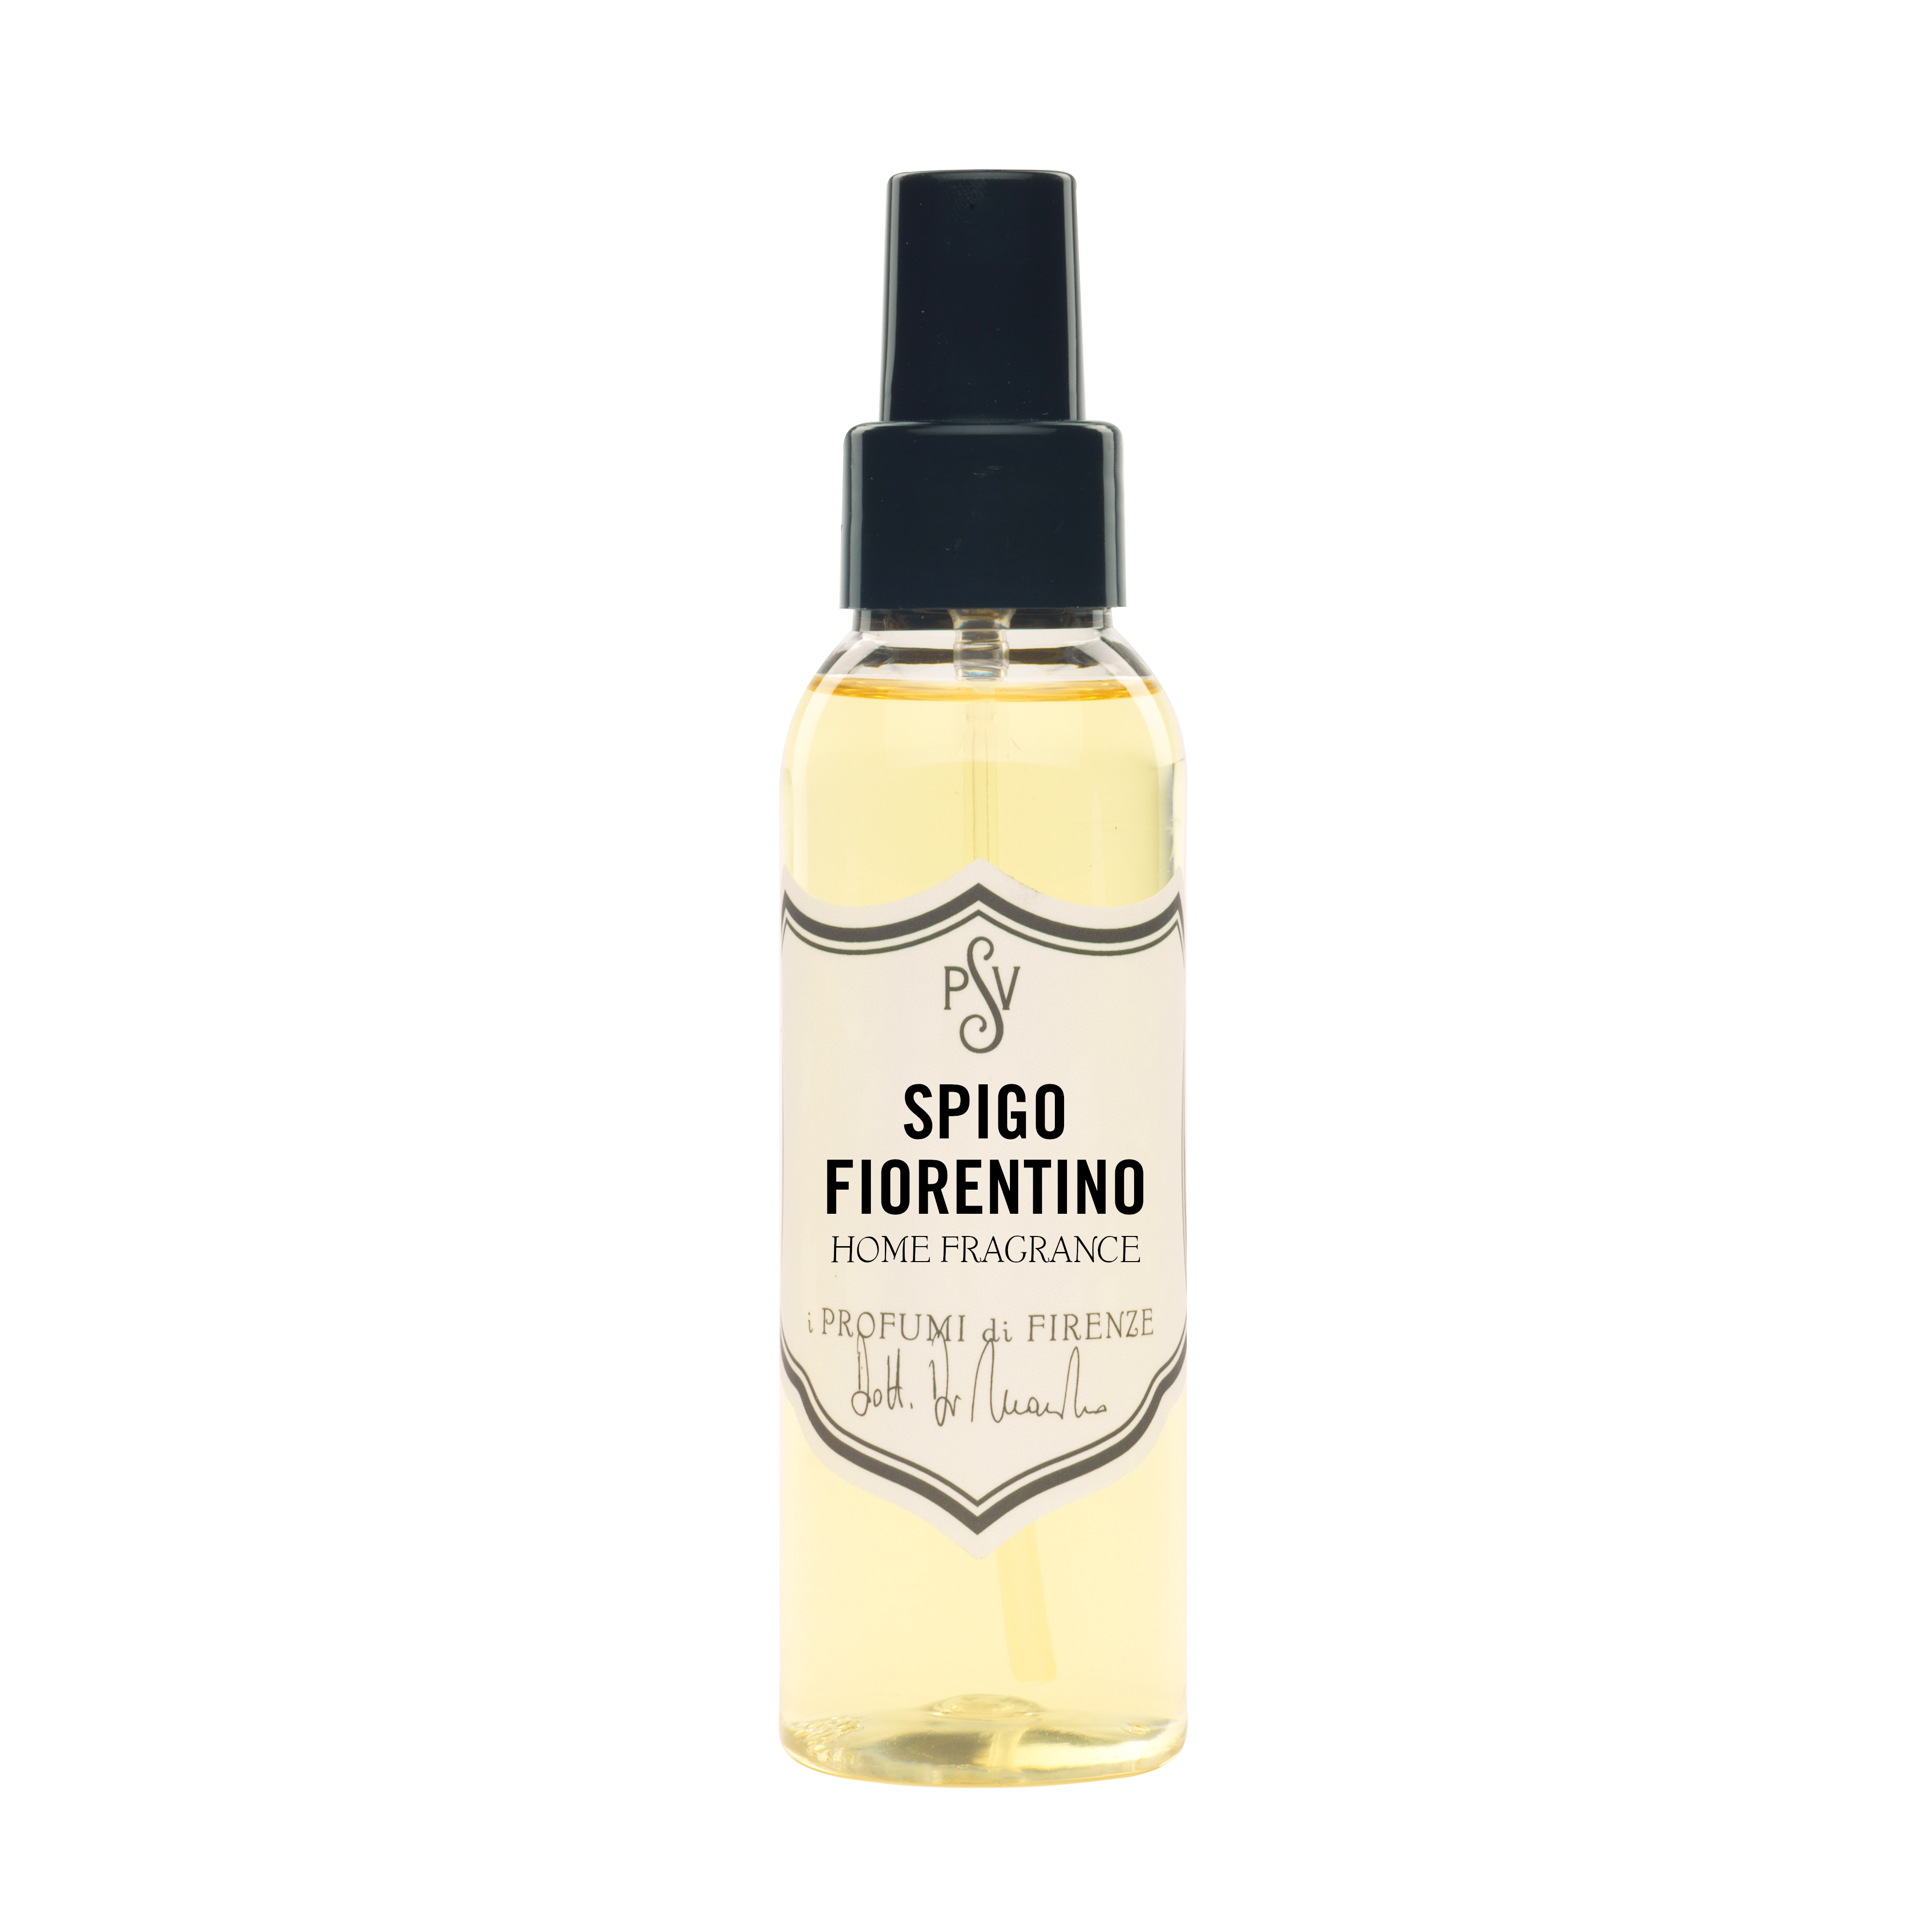 SPIGO FIORENTINO 100ml - Home Fragrance Spray-0